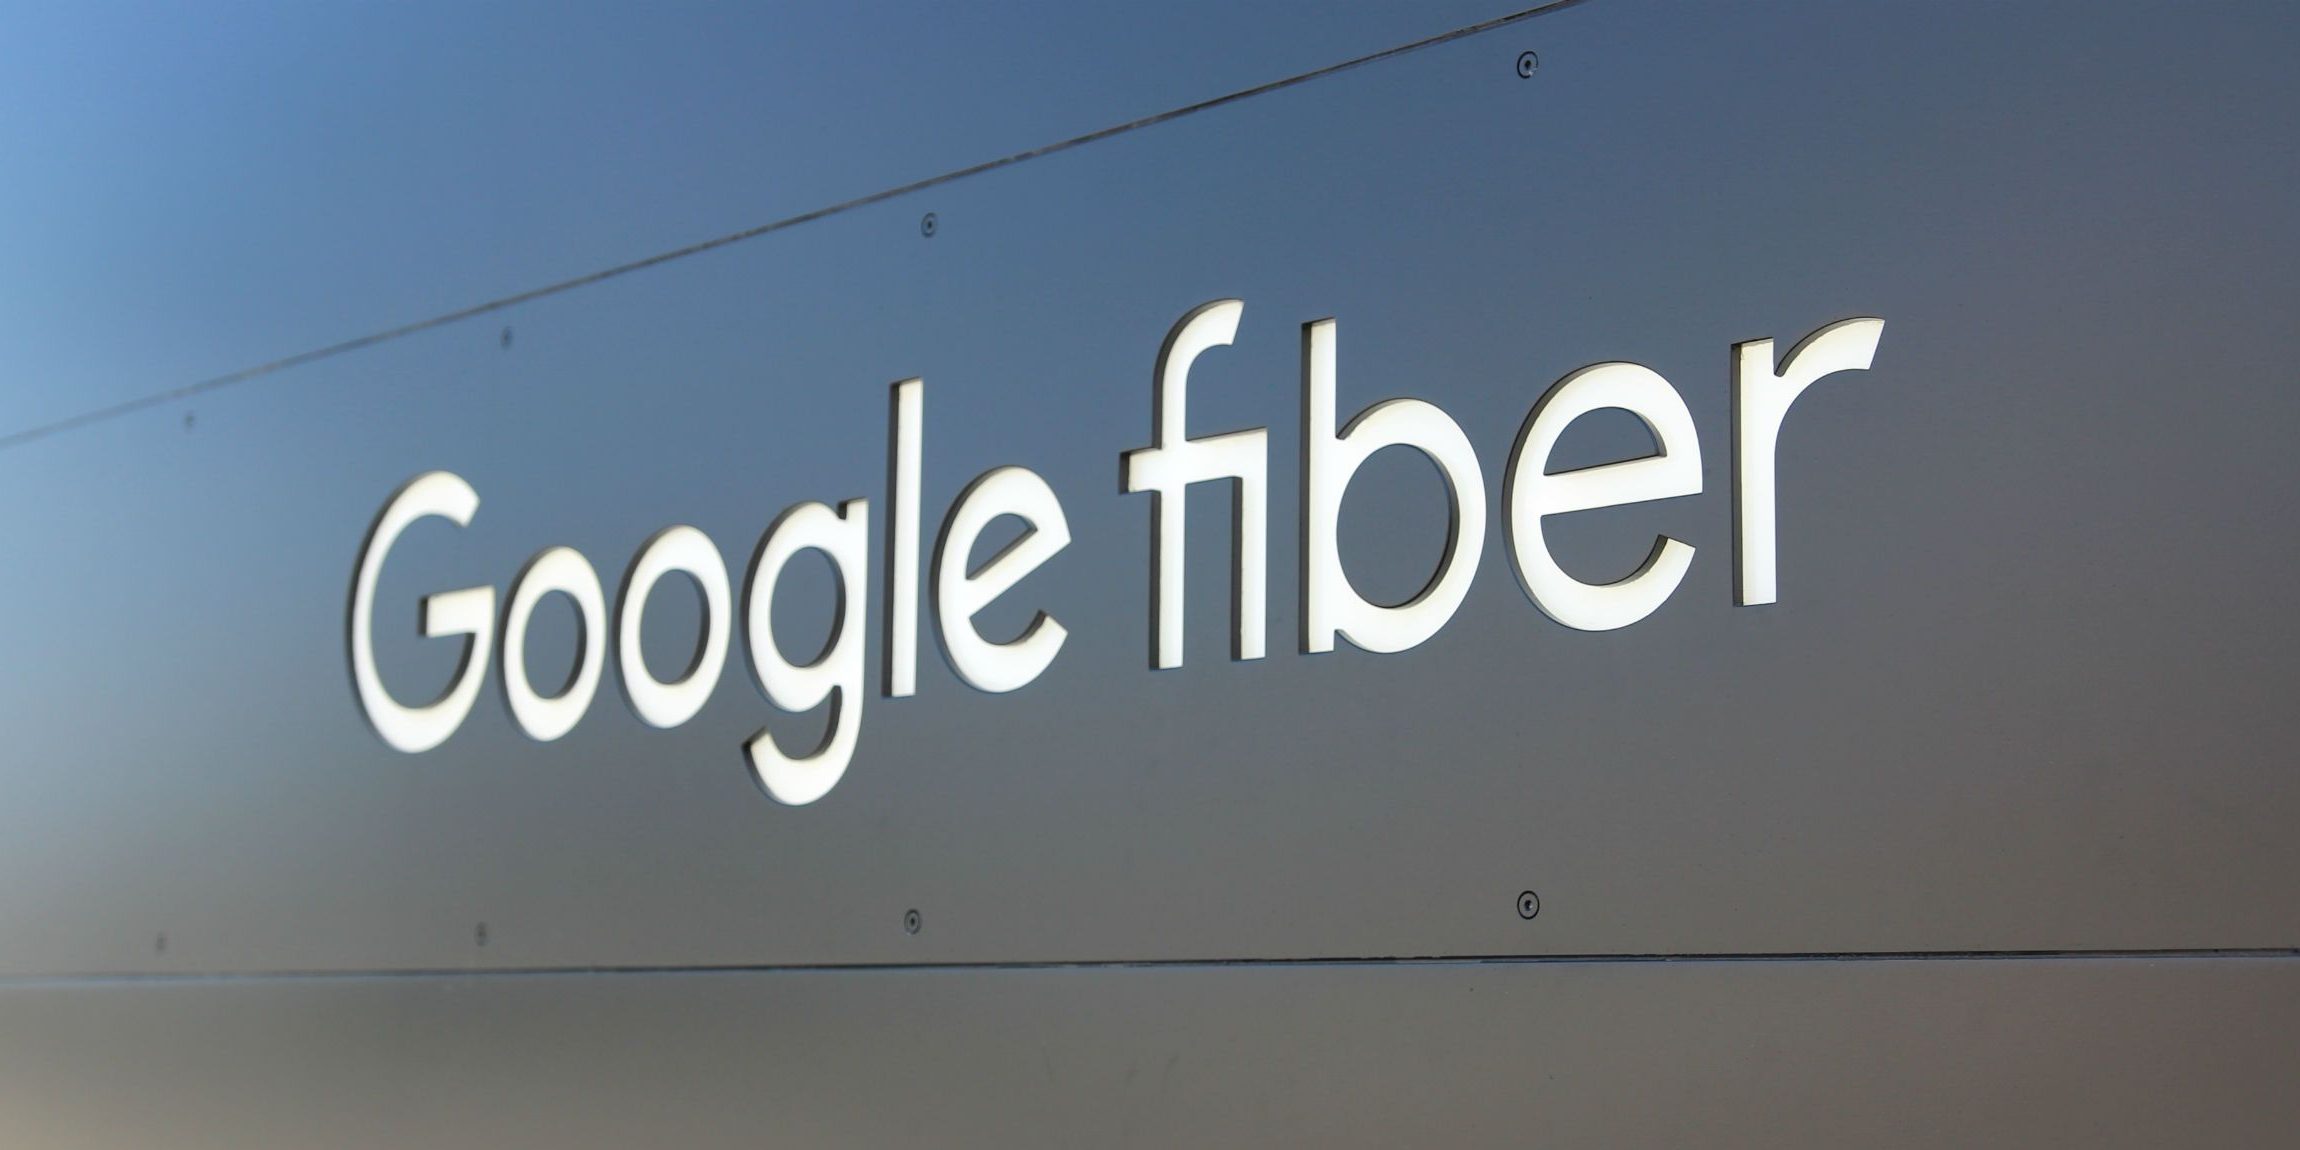 Google Fiber will start testing ‘2 Gigabit Internet’ for 0